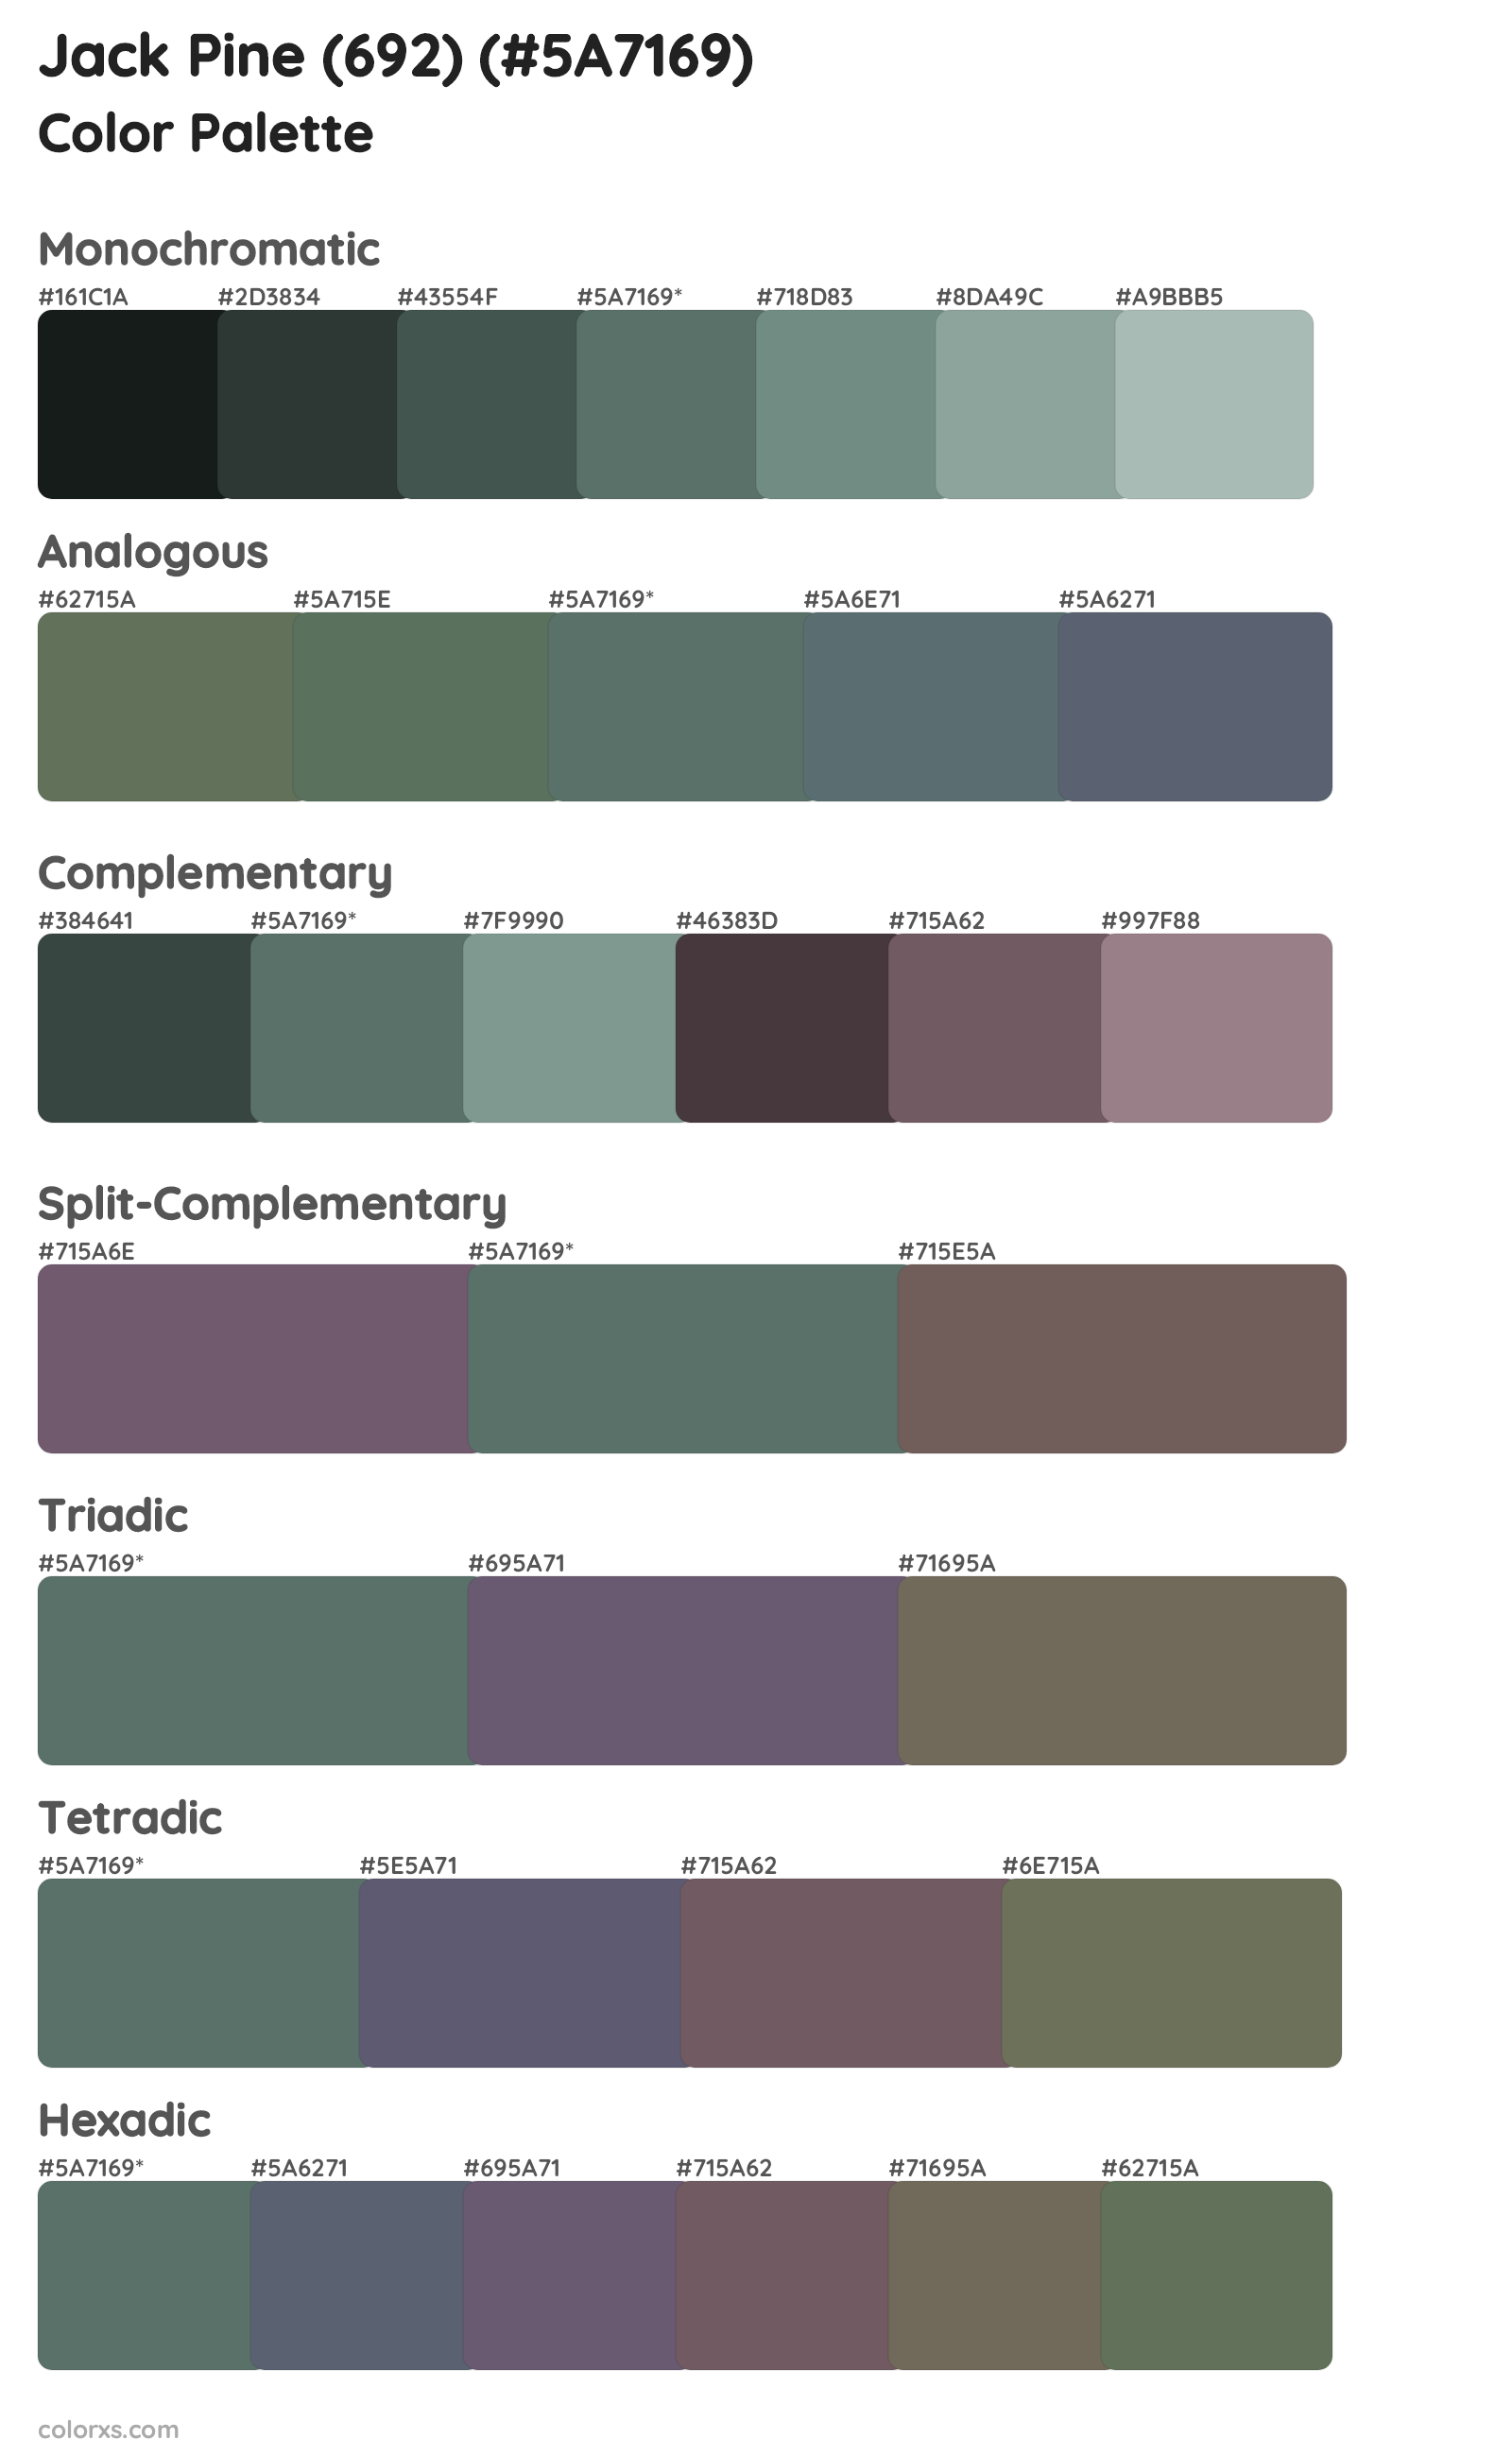 Jack Pine (692) Color Scheme Palettes